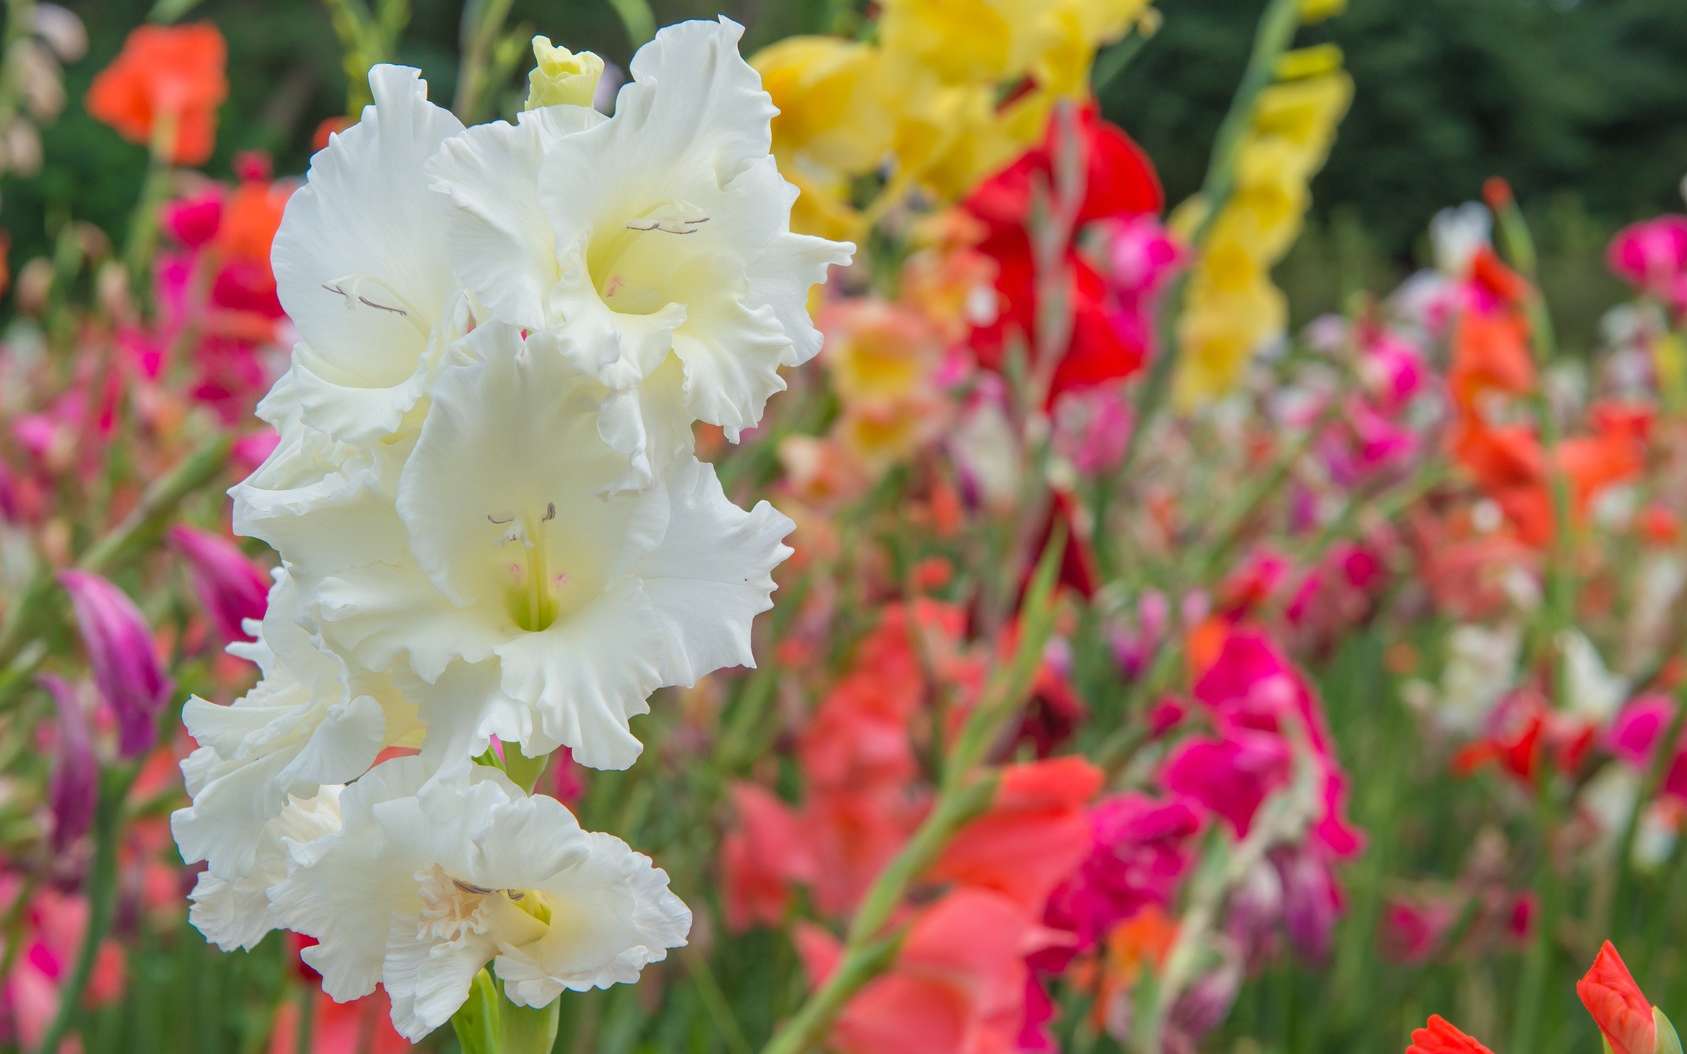 Les glaïeuls ont une hampe florale garnie d’une dizaine de fleurs en épi. © weerayut, Fotolia